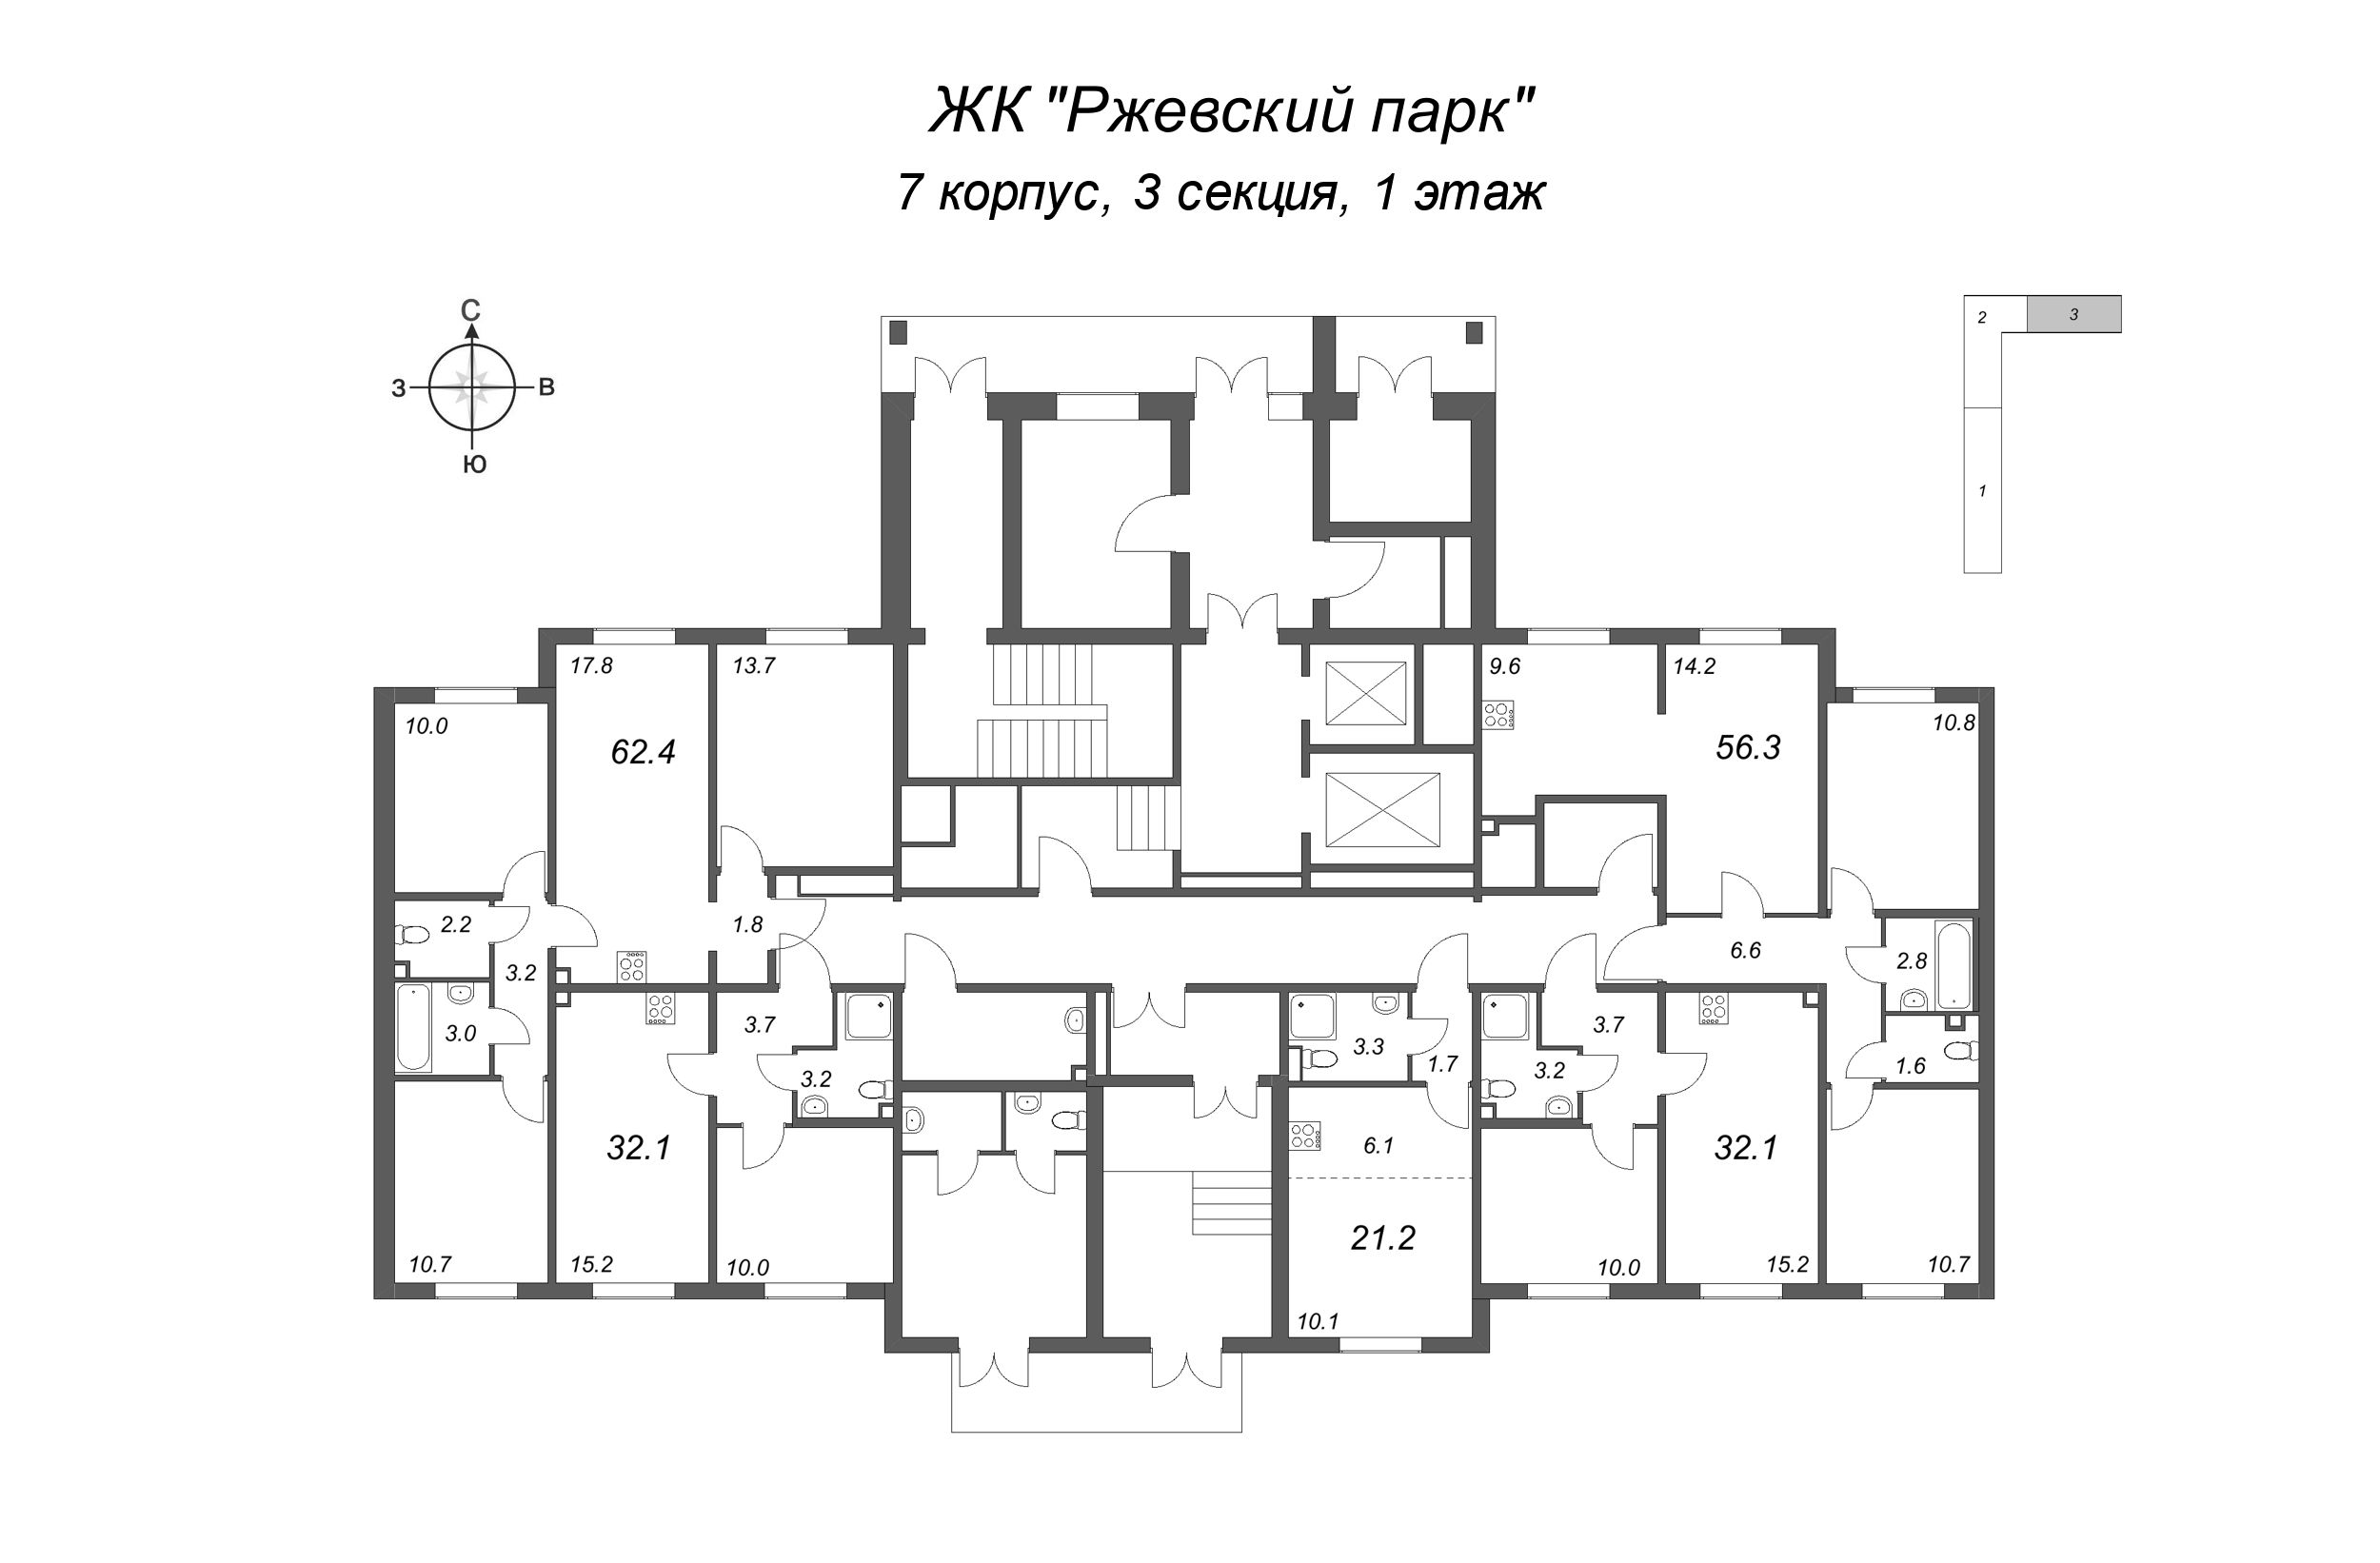 2-комнатная (Евро) квартира, 32.1 м² в ЖК "ЛСР. Ржевский парк" - планировка этажа